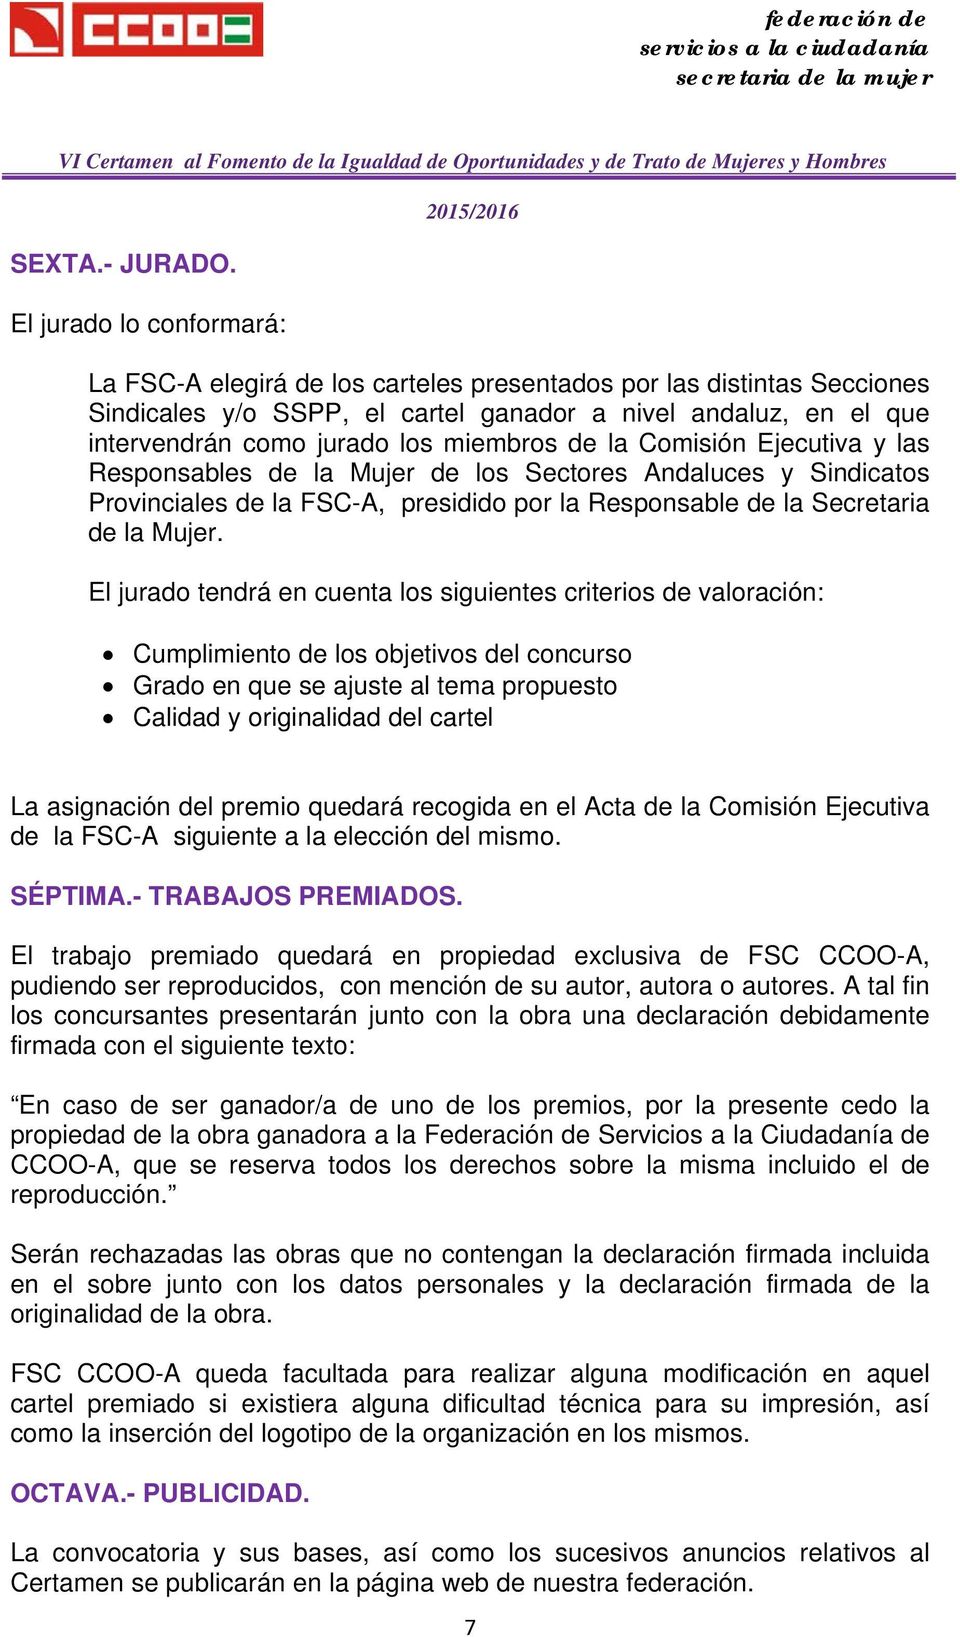 miembros de la Comisión Ejecutiva y las Responsables de la Mujer de los Sectores Andaluces y Sindicatos Provinciales de la FSC-A, presidido por la Responsable de la Secretaria de la Mujer.